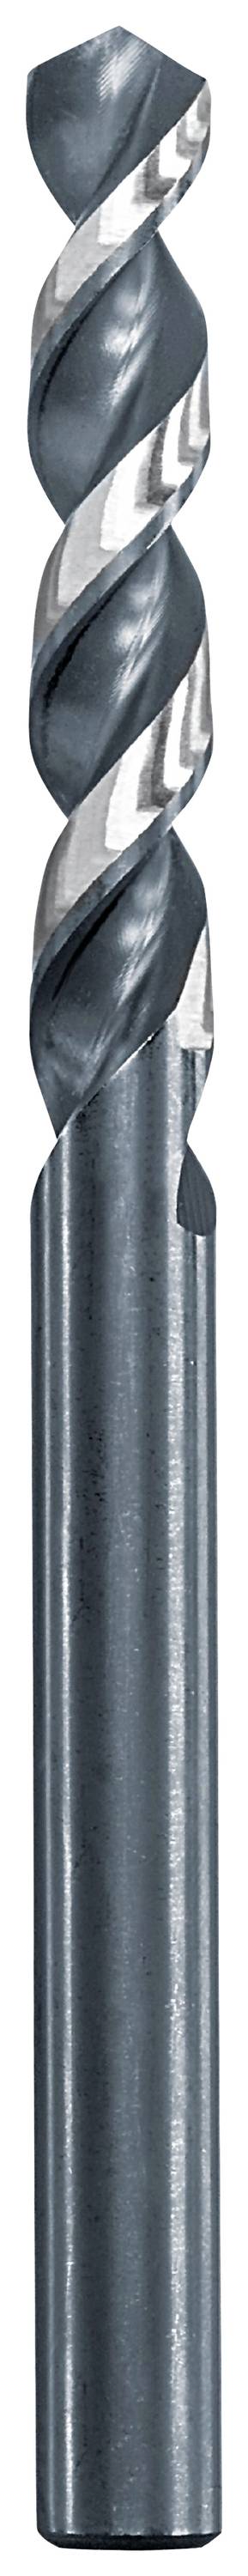 KWB 258720 Metall-Spiralbohrer 12 mm Gesamtlänge 151 mm 1 St.